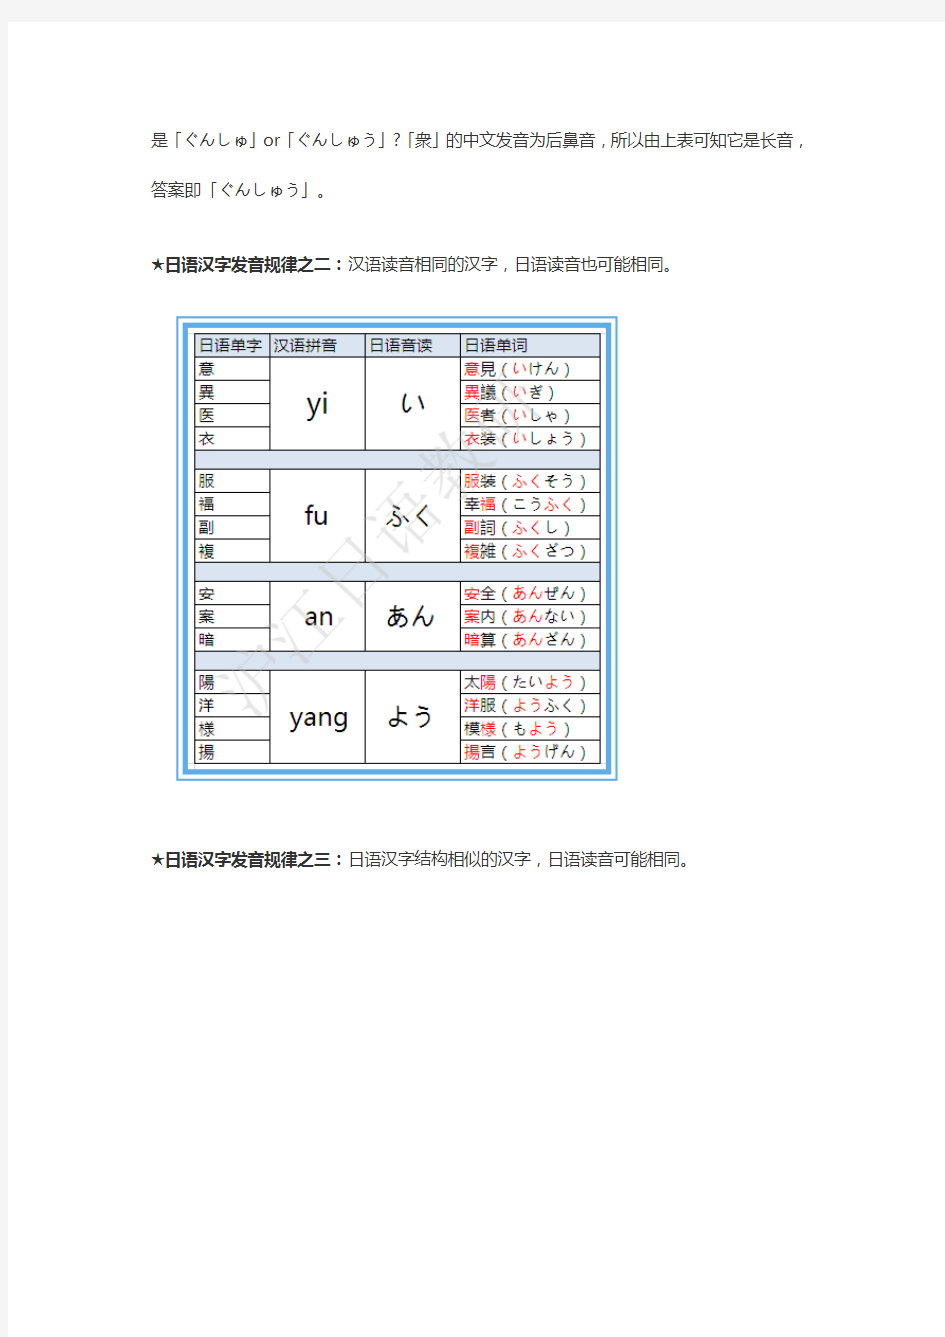 日语汉字发音规律(附表格)